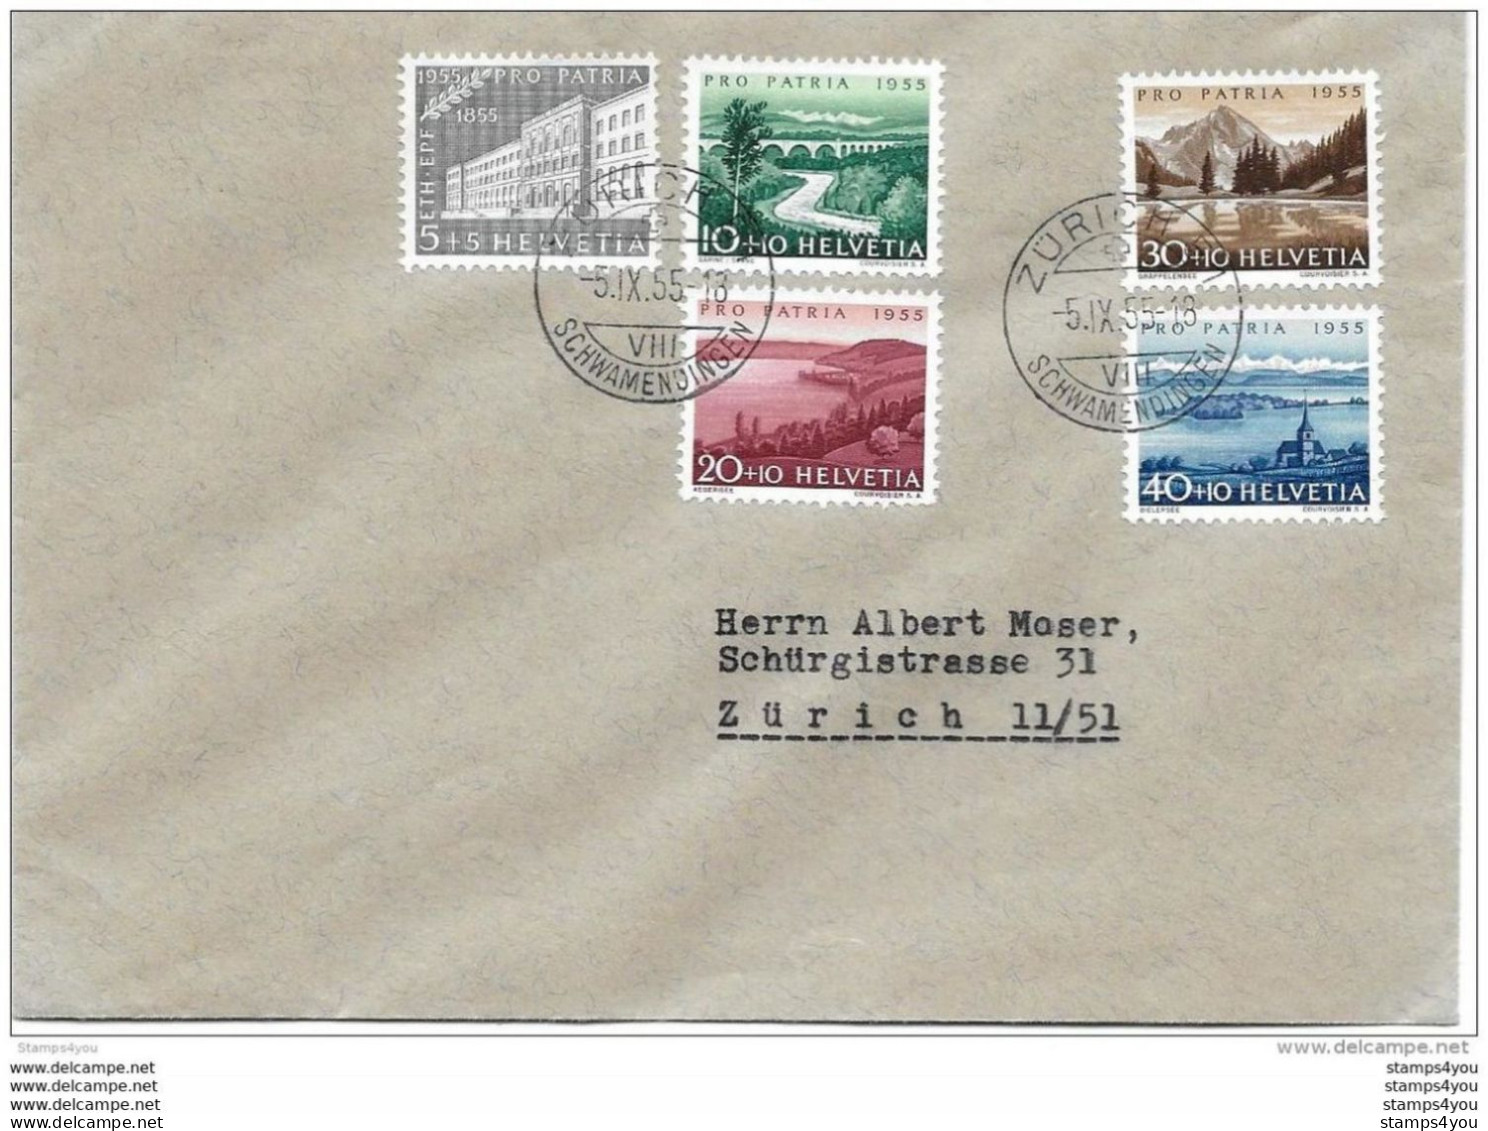 79 - 52 - Enveloppe  Avec Série Pro Patria 1955 - Cachets à Date Zürich Schwamendingen - Briefe U. Dokumente